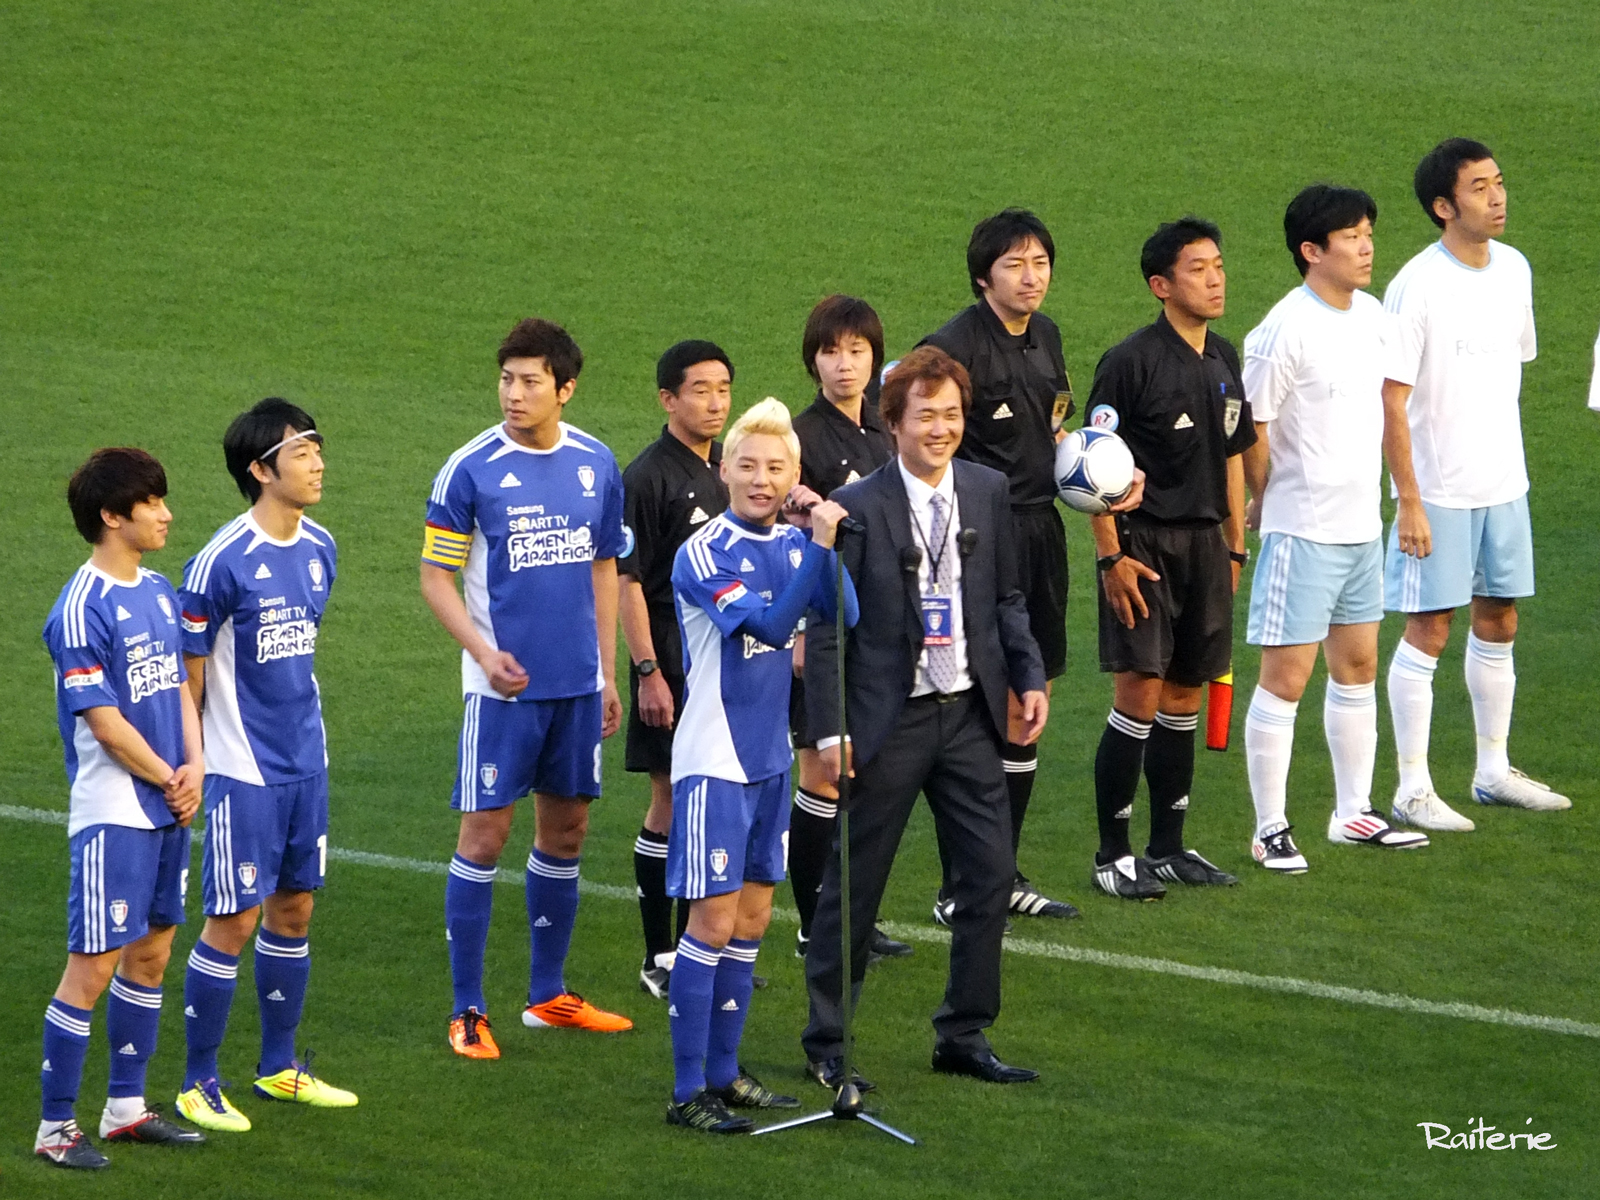 [VID&PIC] 120428 Junsu et le FC Men au match de football caritatif au Japon.   1204300215111488799785111